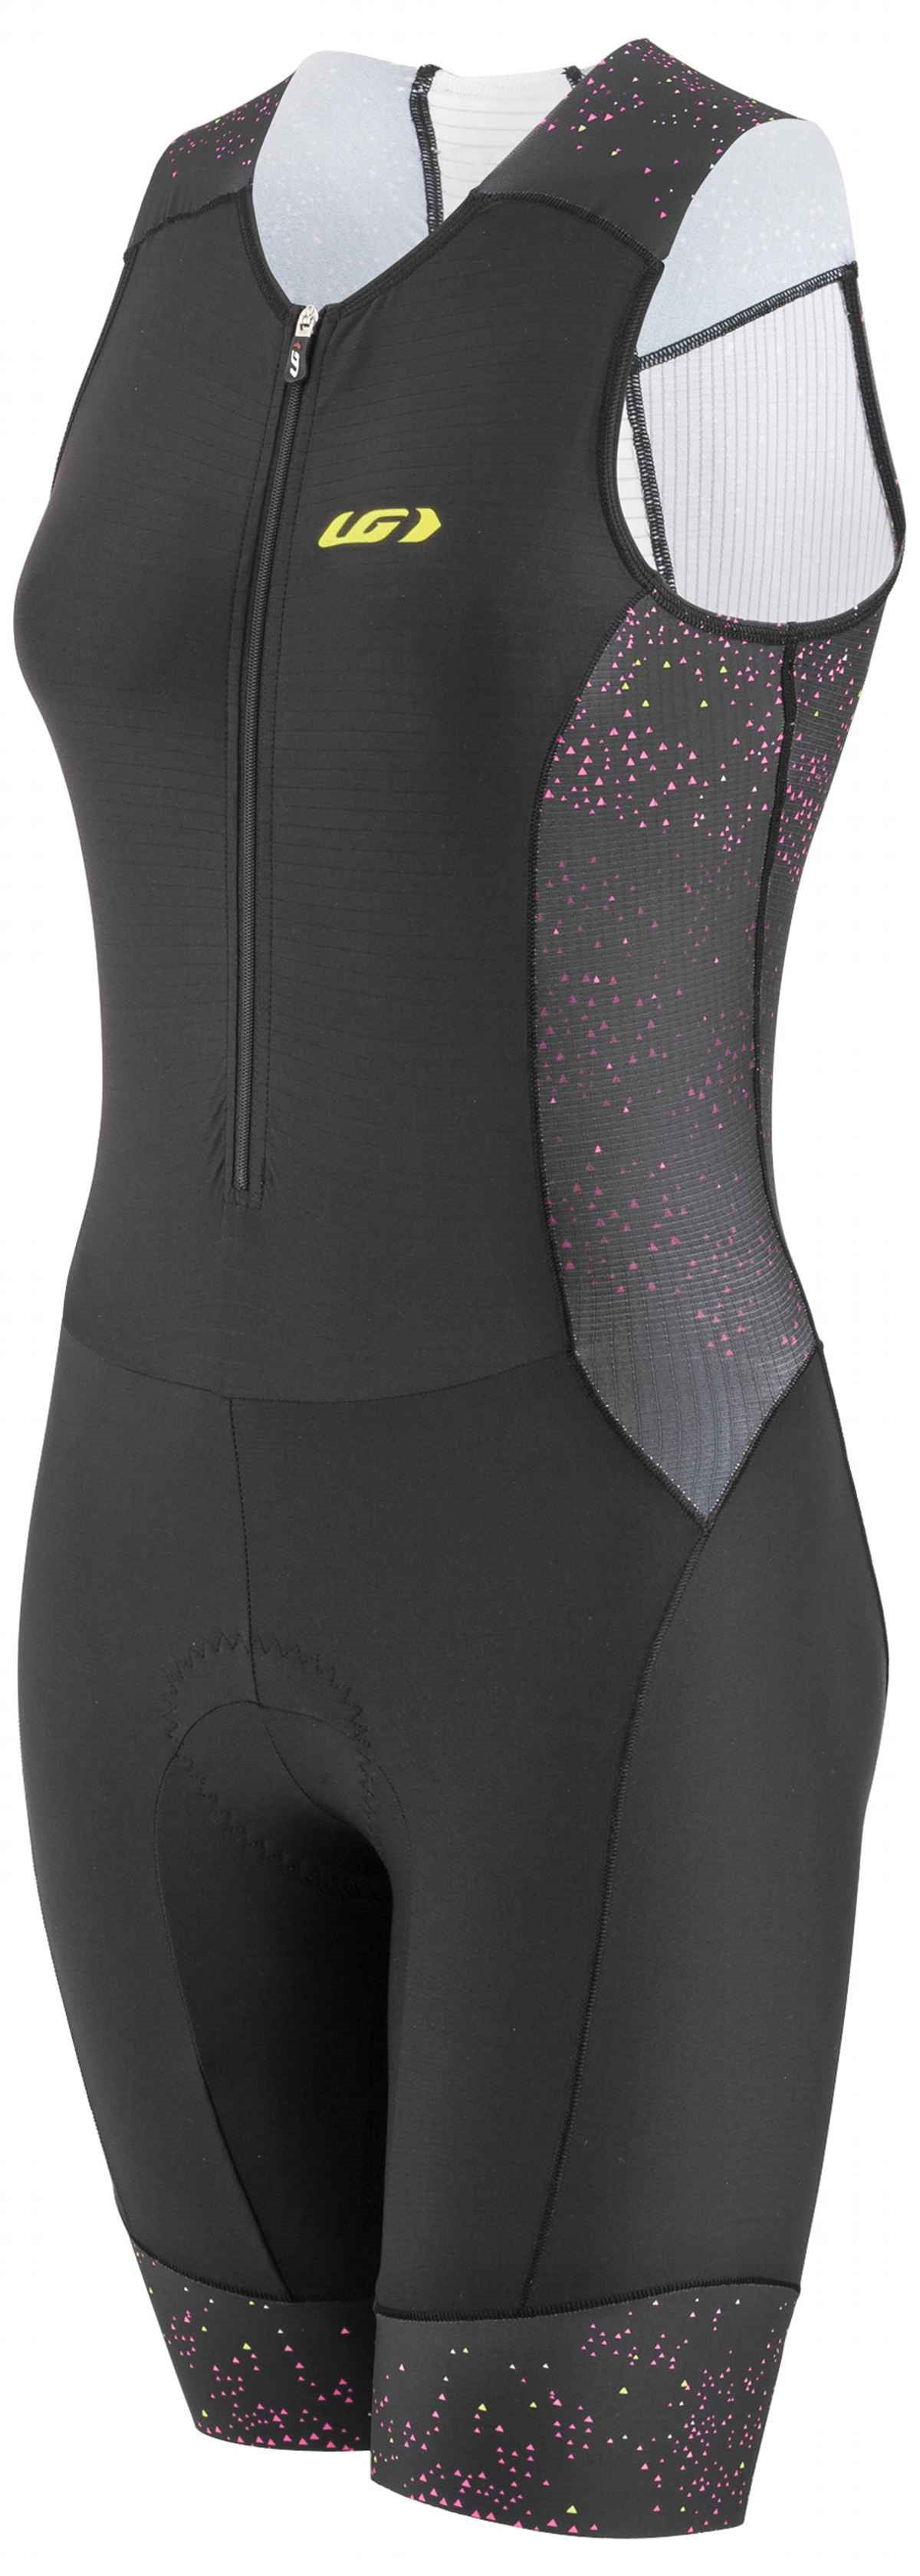 Louis Garneau Pro Femme Carbone Triathlon Costume Géométrie XL Retail $150 